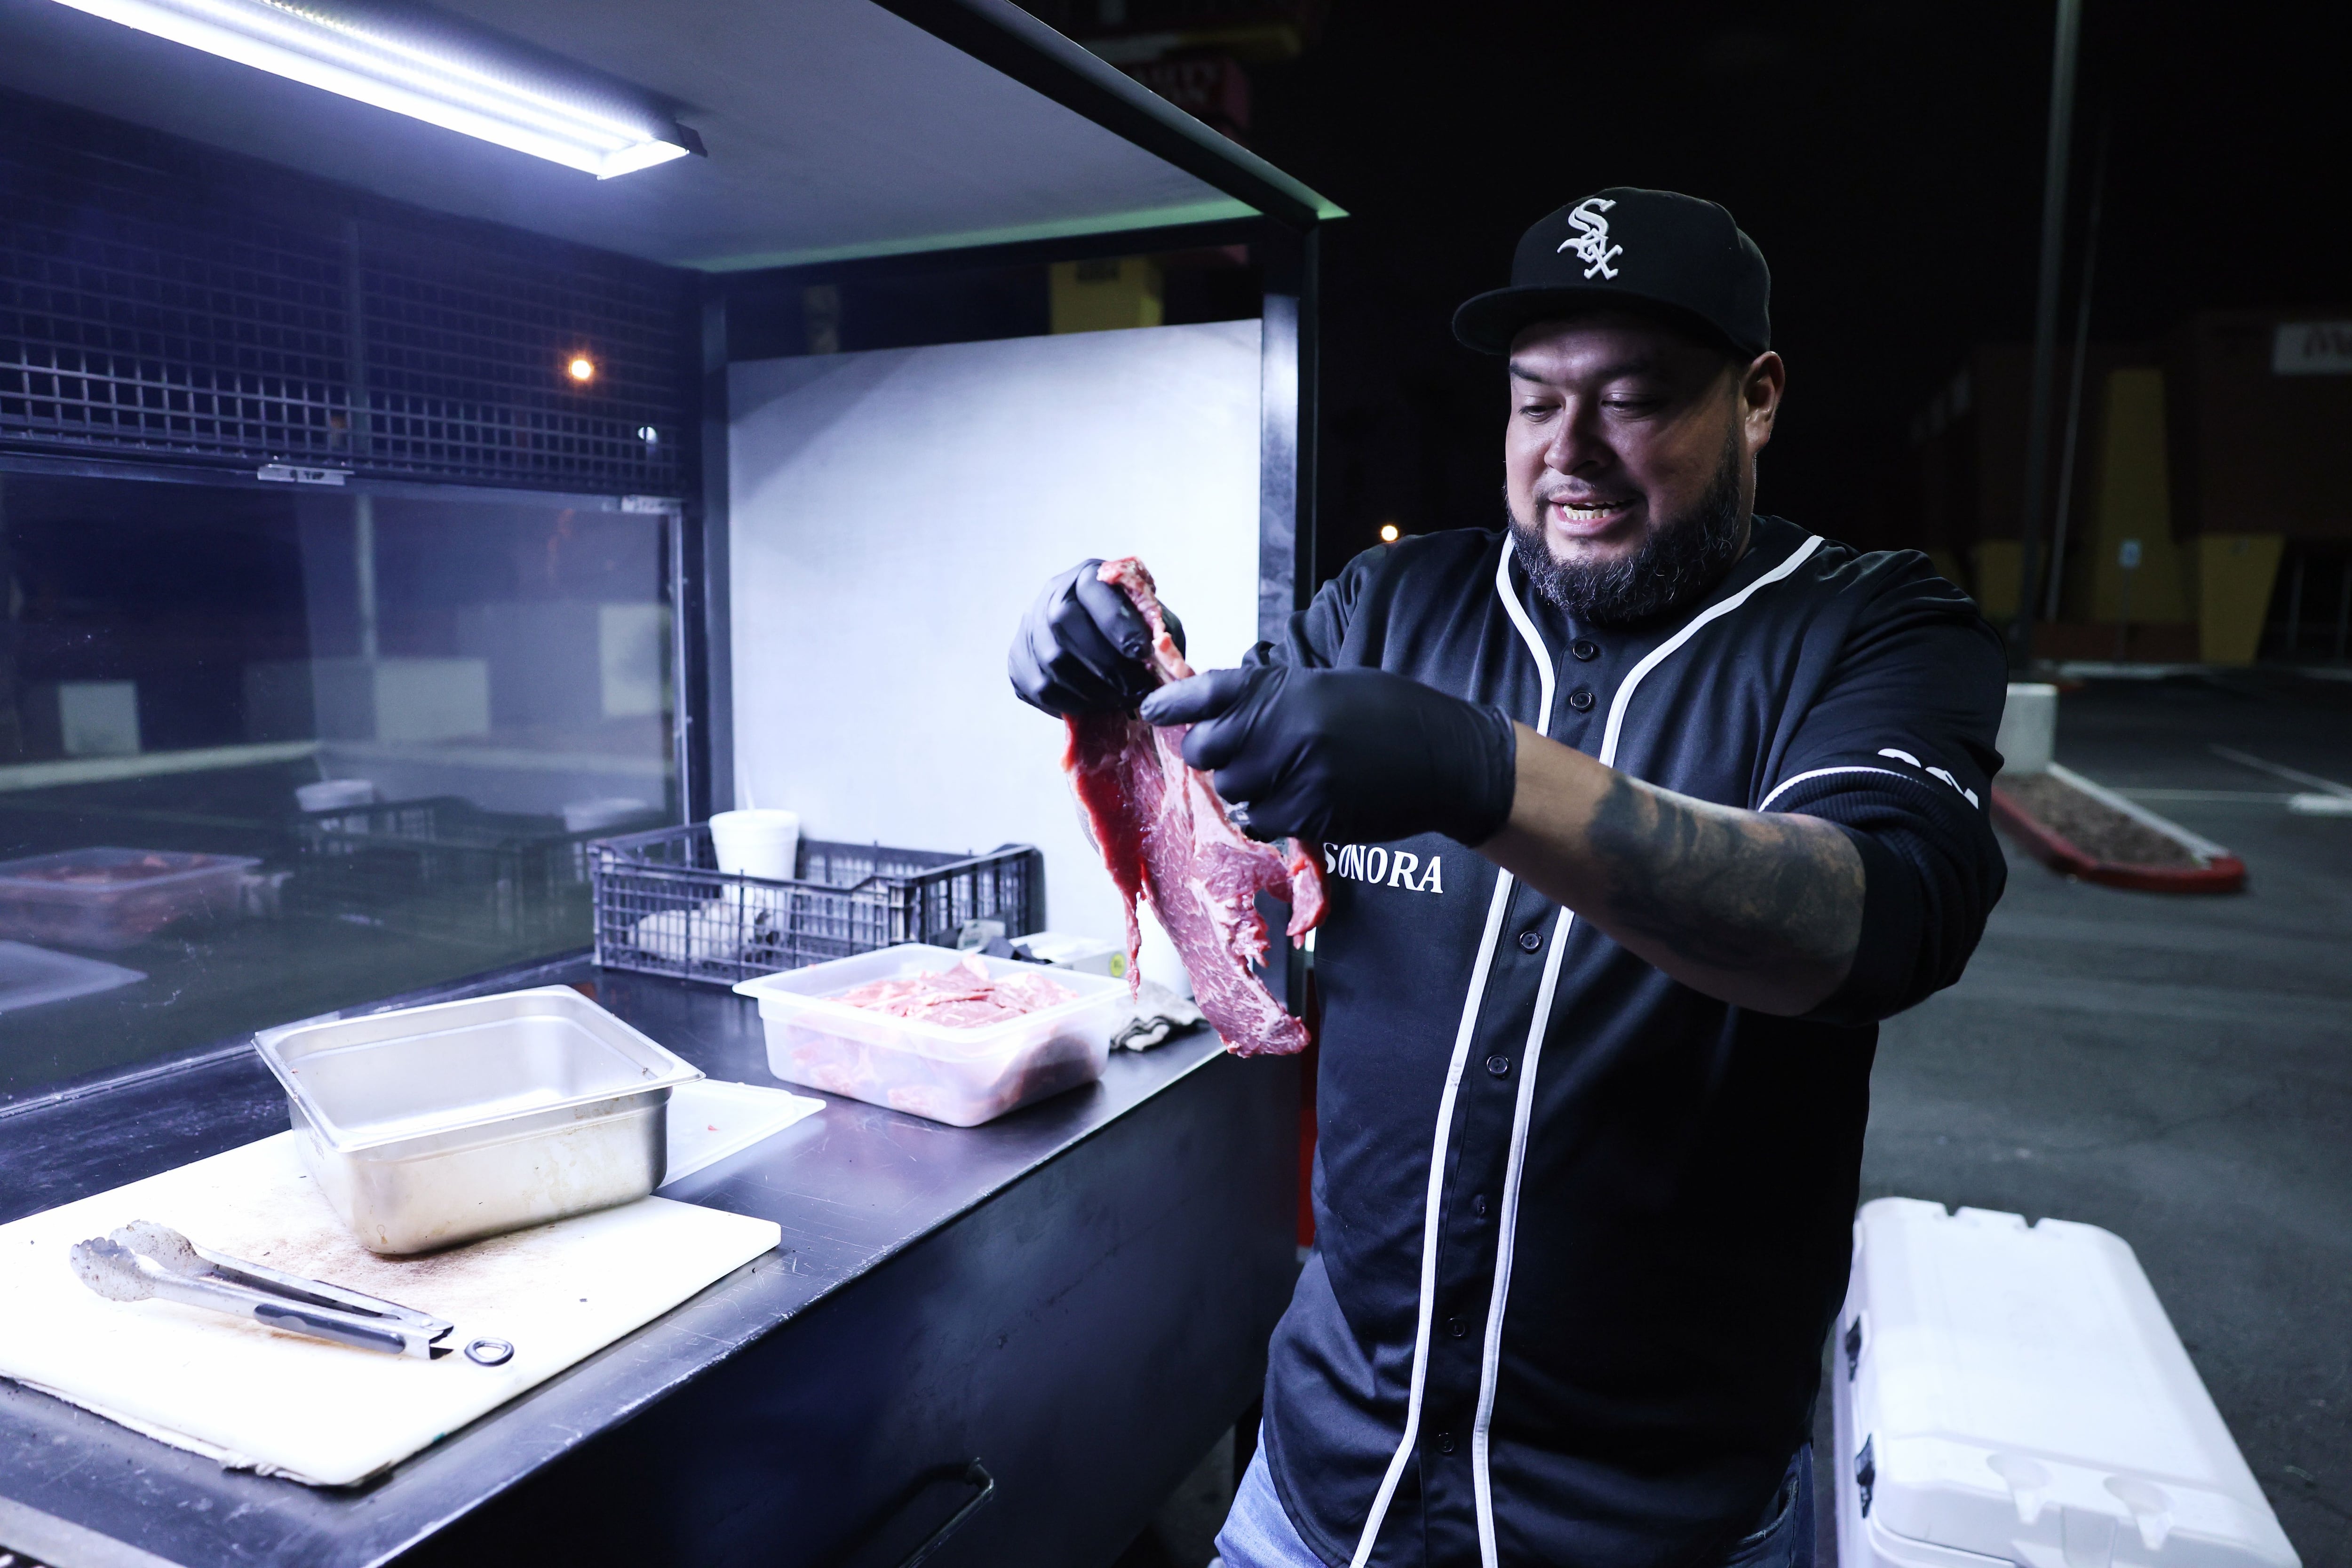 La familia sonorense Gálvez Pro llevó el sabor de los tradicionales tacos y carne de Sonora a Las Vegas. | Julián Ortega